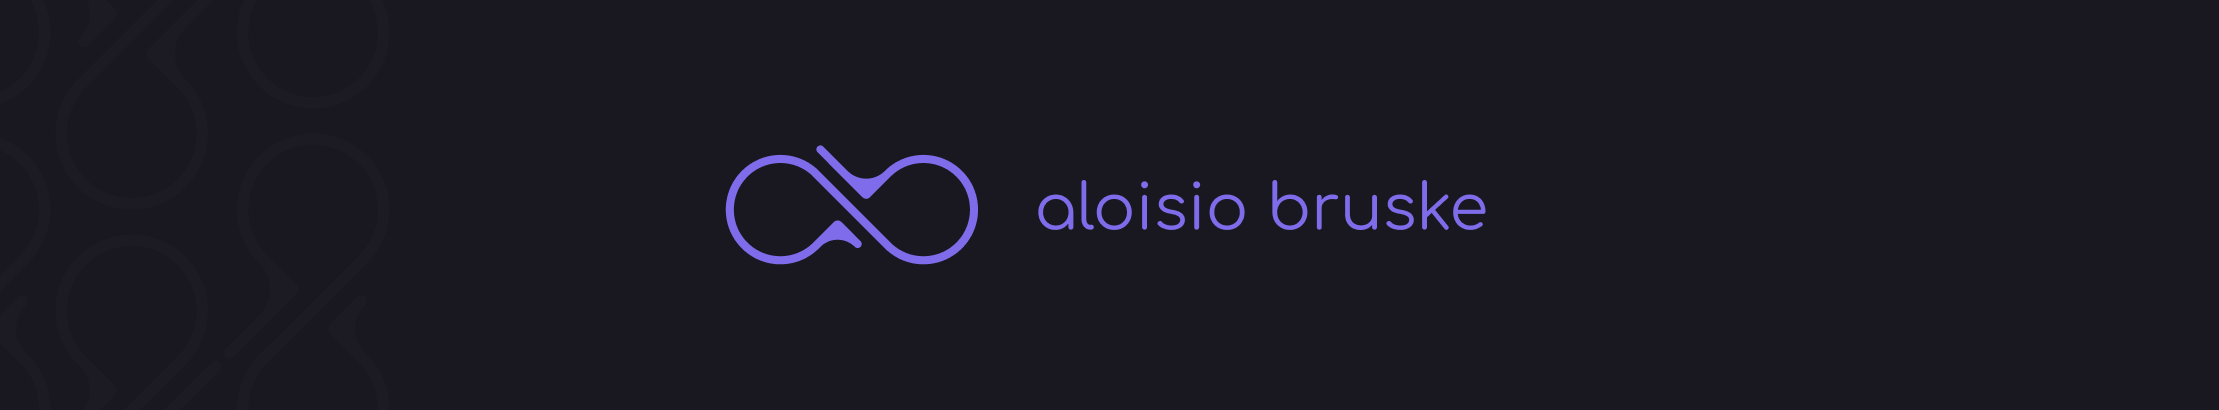 Aloisio Bruske's profile banner